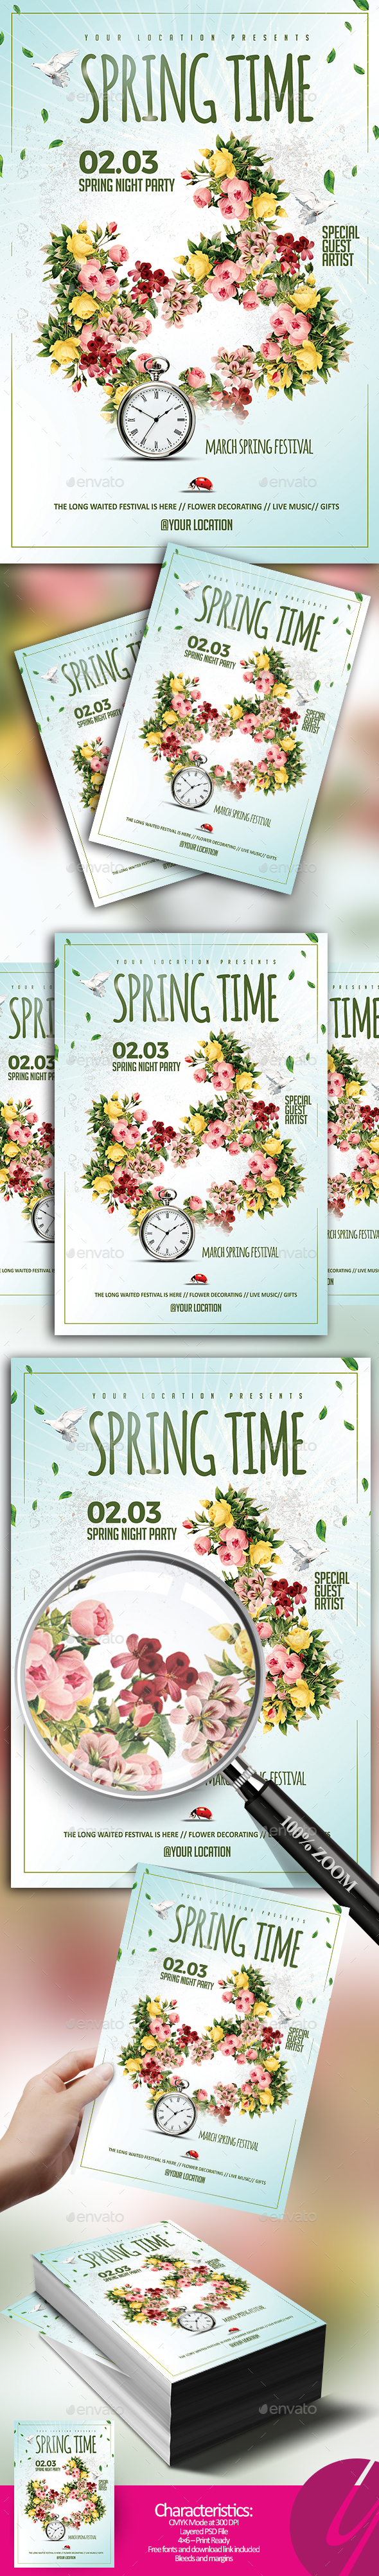 Spring Time Flyer